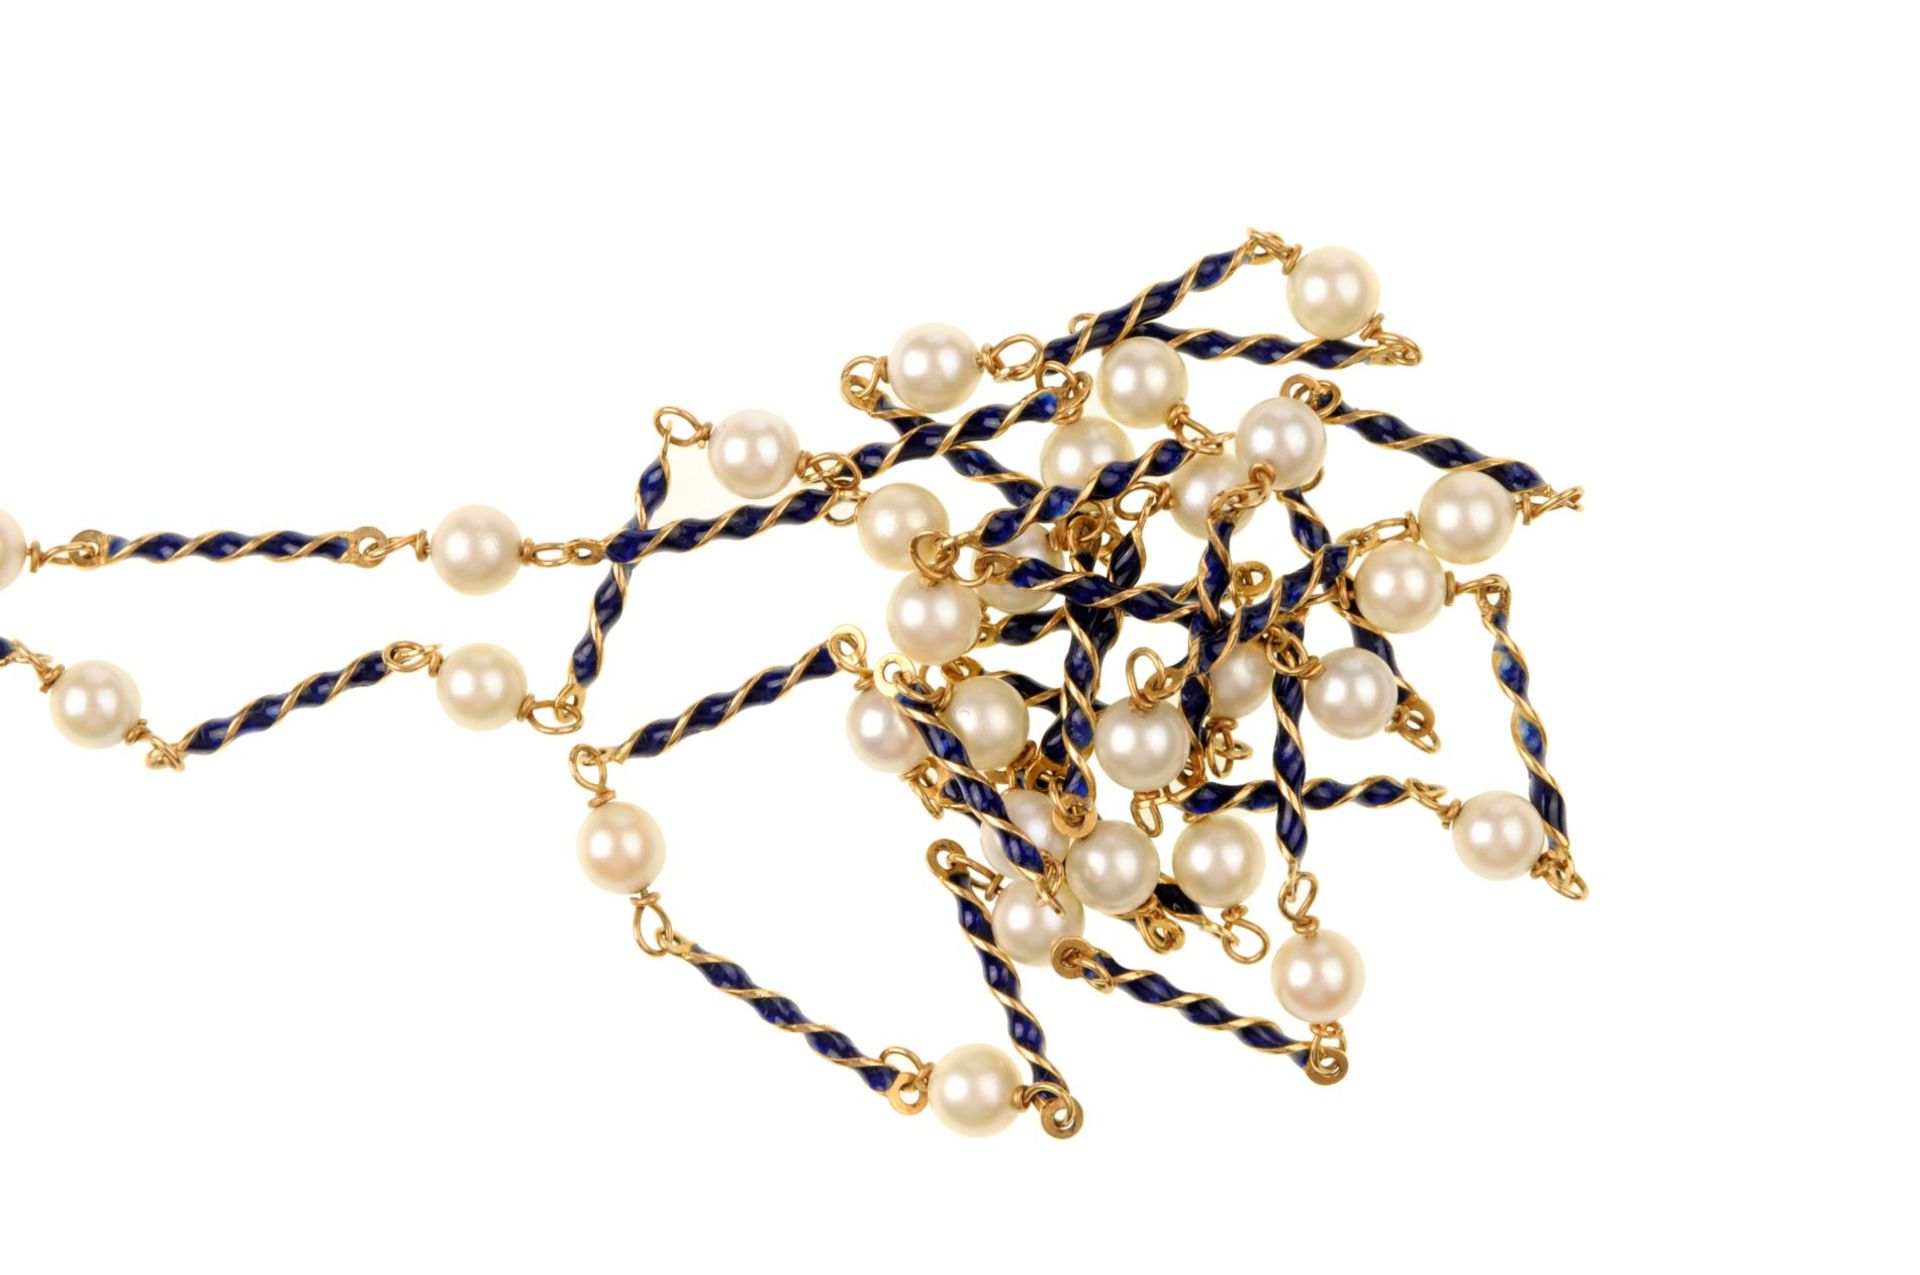 Lange Kette in der Art einer Chanel-Kette mit Perlen und dunkelblau emaillierten Zwischengliede... - Image 3 of 3